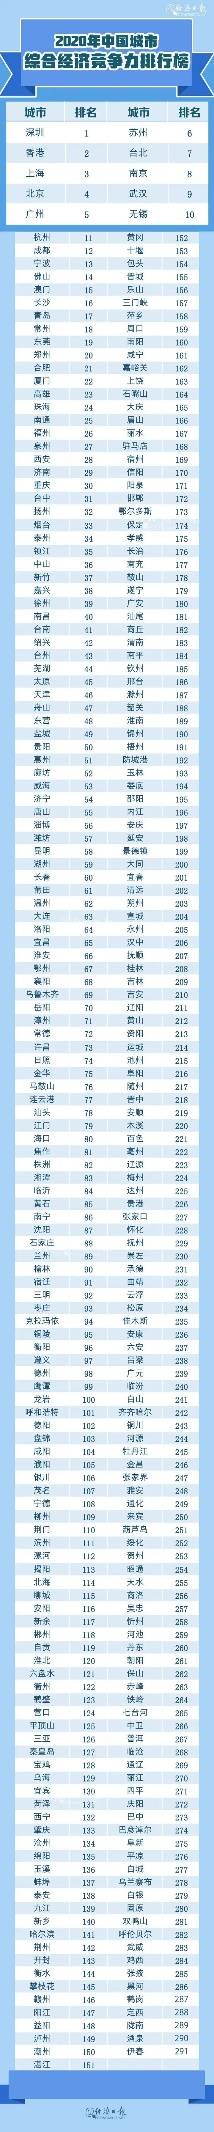 2020年各省市经济排名_2020年前三季度,香港GDP在全国排第17名,那台湾、福建